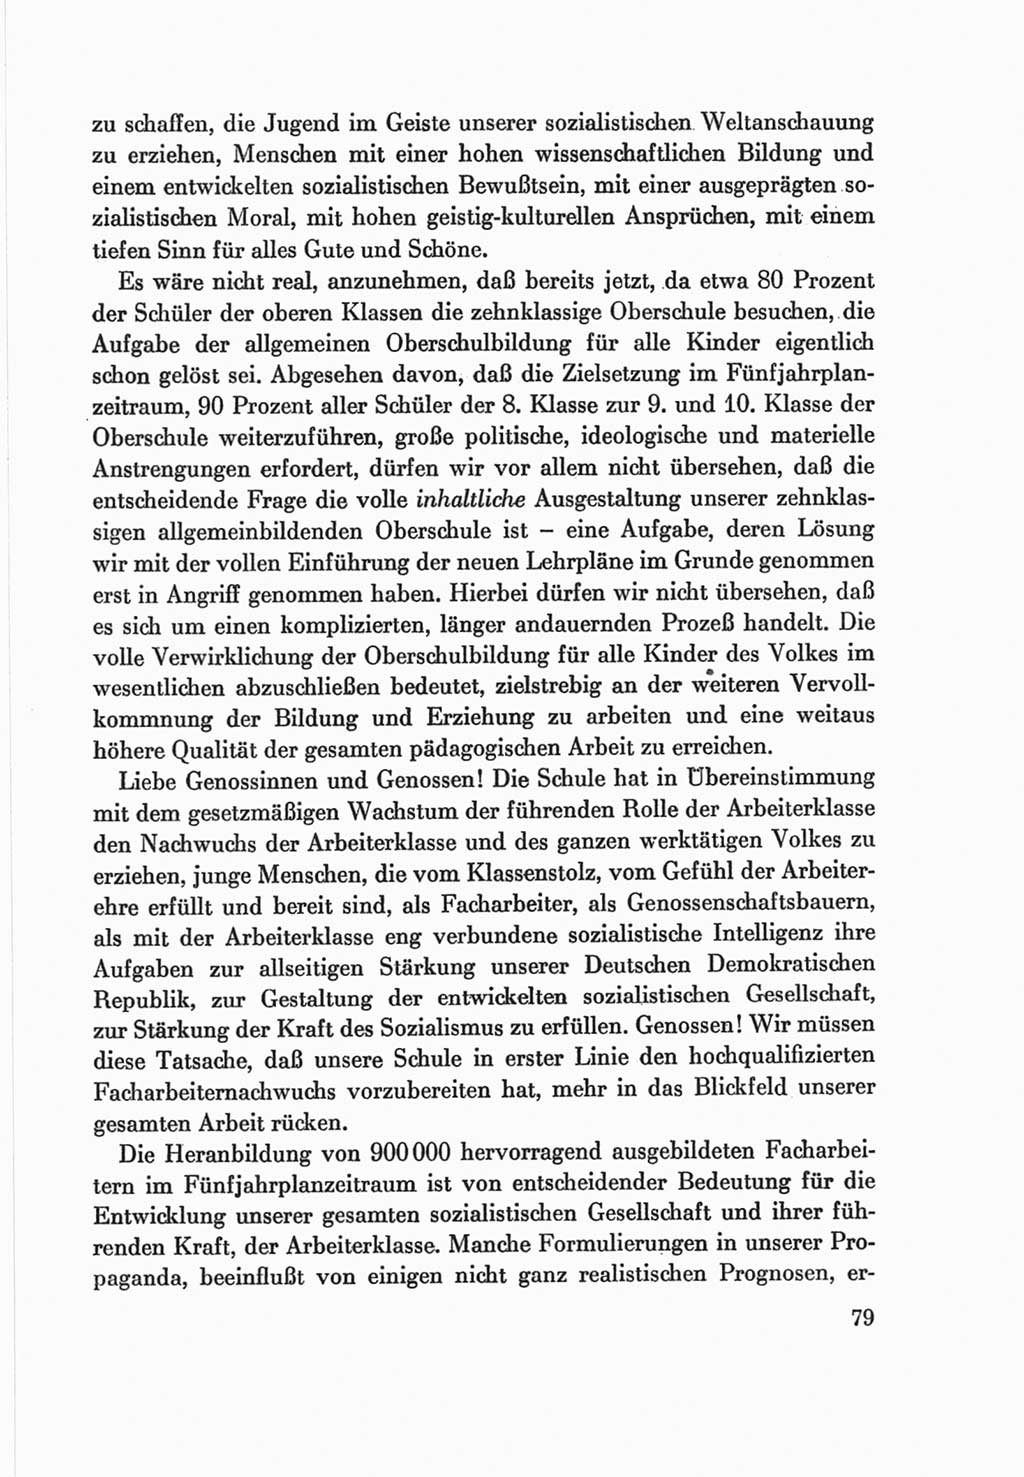 Protokoll der Verhandlungen des Ⅷ. Parteitages der Sozialistischen Einheitspartei Deutschlands (SED) [Deutsche Demokratische Republik (DDR)] 1971, Band 2, Seite 79 (Prot. Verh. Ⅷ. PT SED DDR 1971, Bd. 2, S. 79)